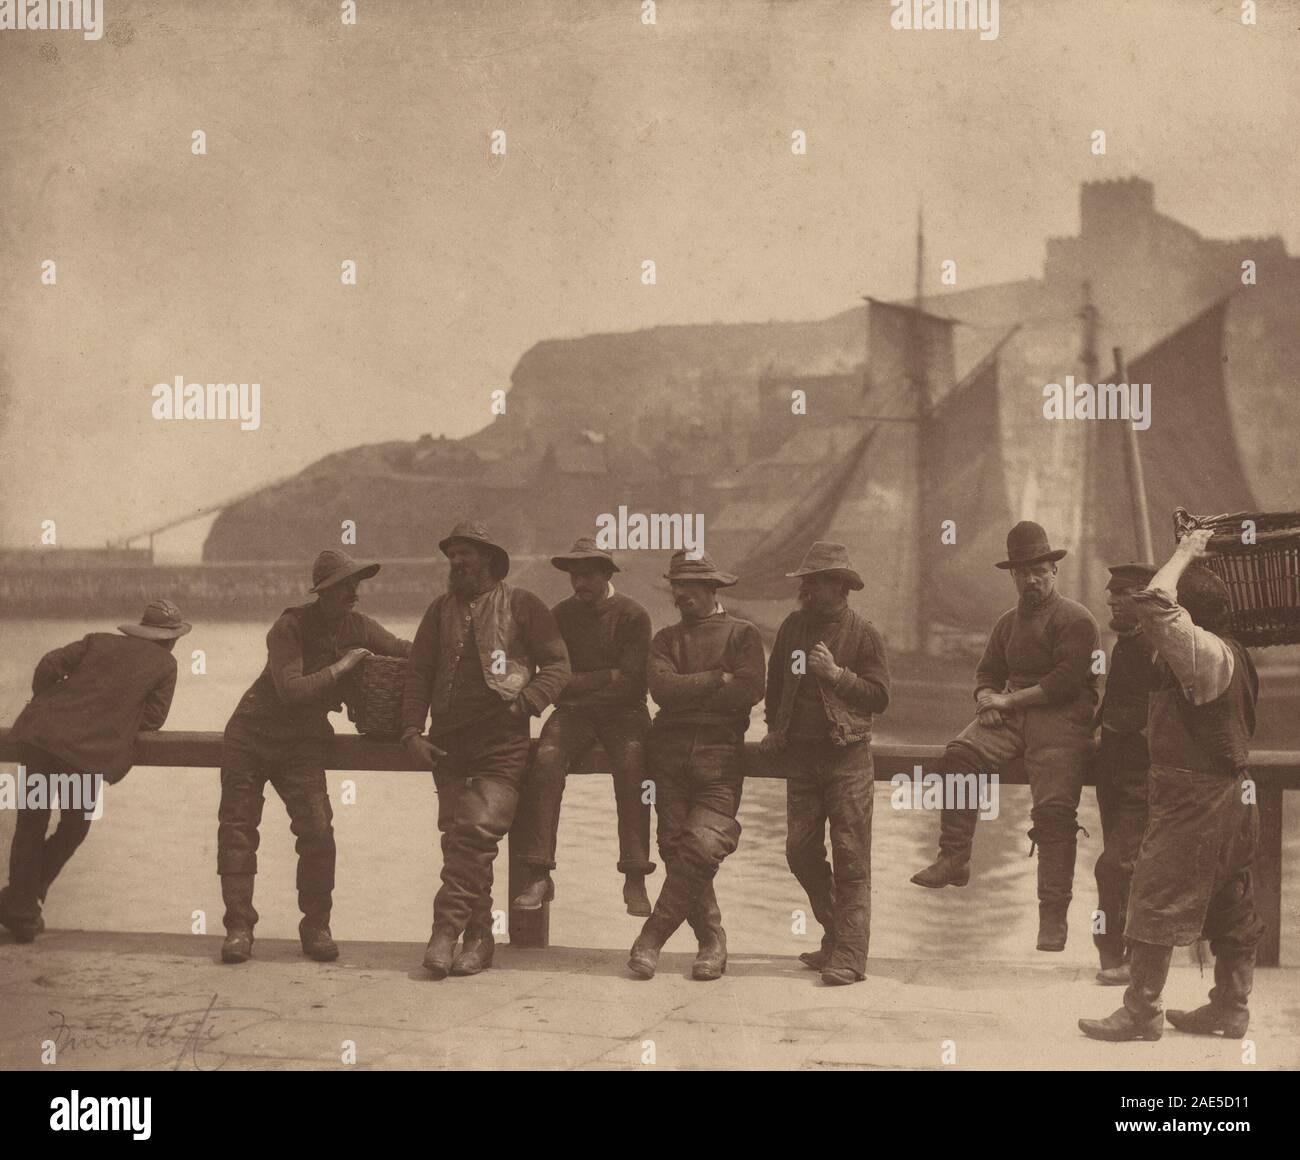 Whitby pescatori; circa 1885 data Frank Meadow Sutcliffe, Whitby pescatori, c 1885 Foto Stock